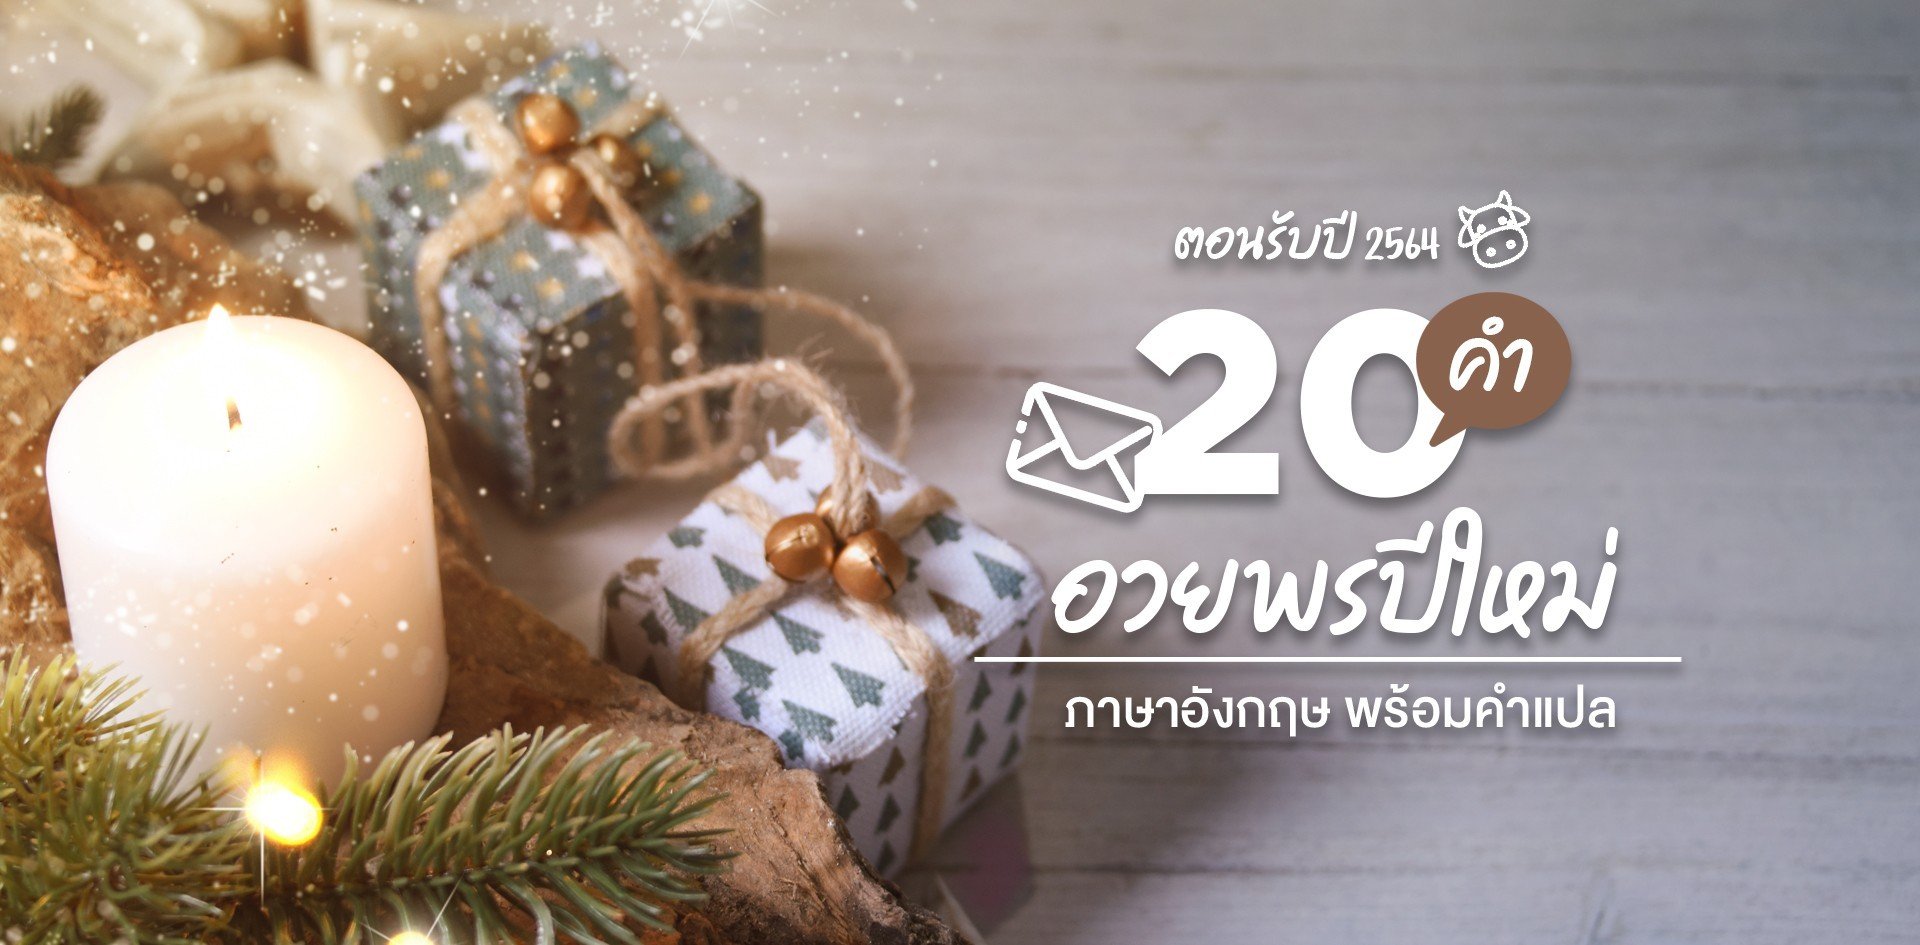 20 คำอวยพรปีใหม่ภาษาไทยและอังกฤษ 2564 ความหมายดี ๆ พร้อมคำแปล